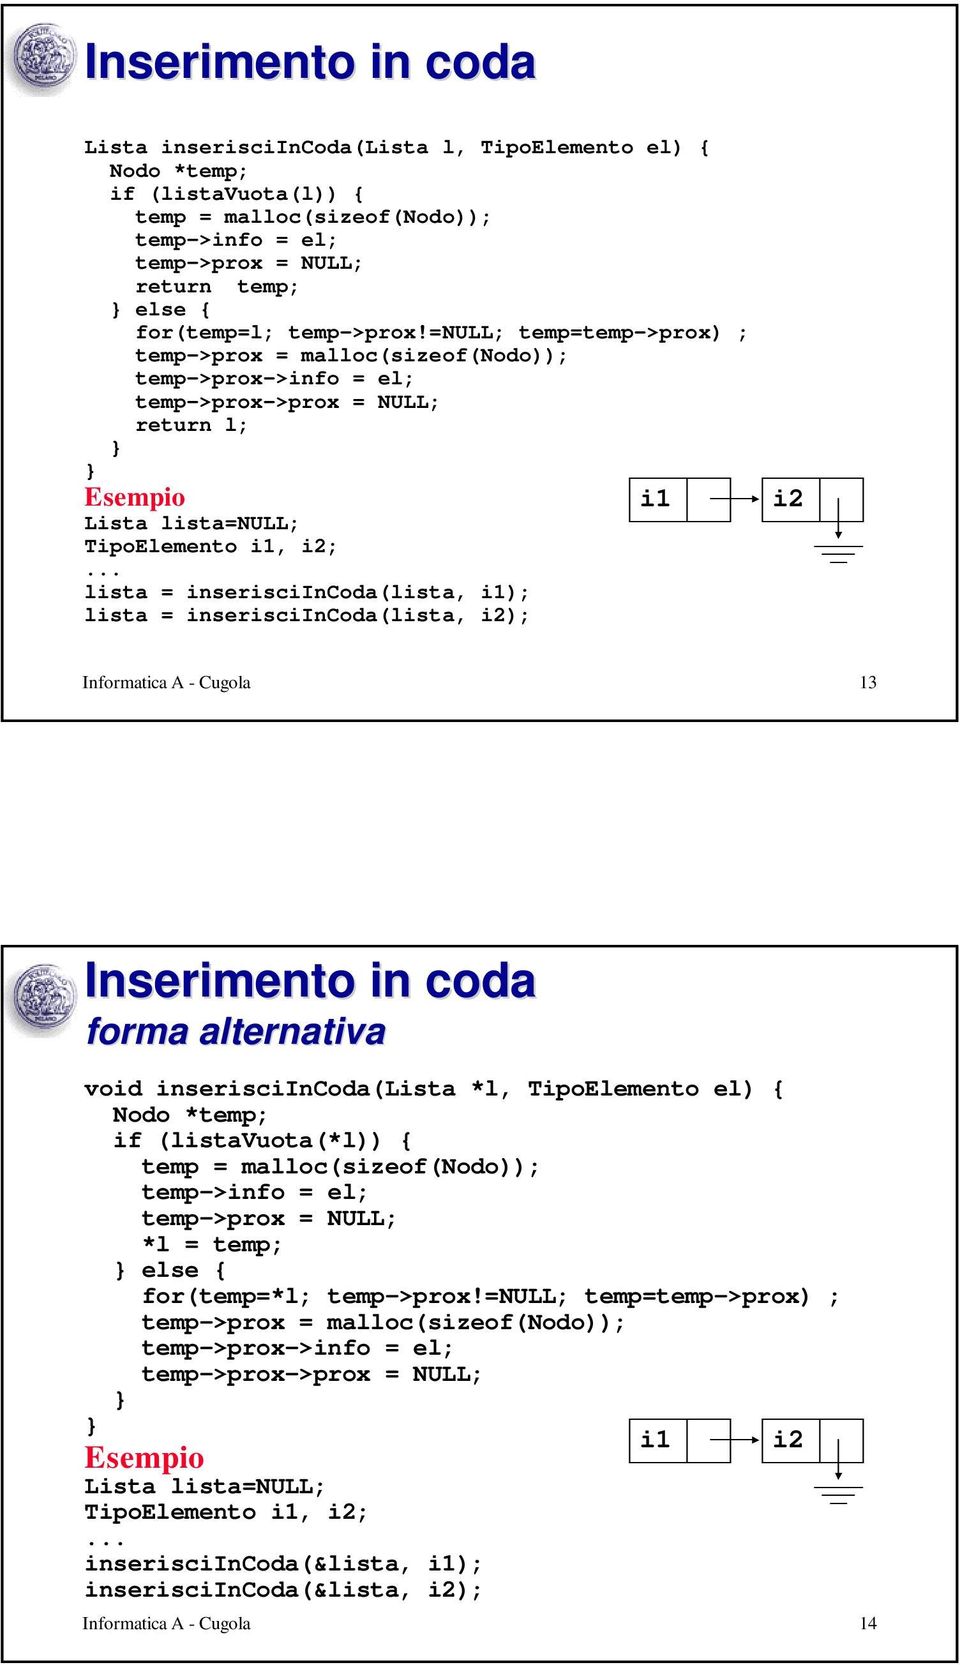 Informatica A - Cugola 13 Inserimento in coda forma alternativa void inserisciincoda(lista *l, TipoElemento el) { Nodo *temp; if (listavuota(*l)) { temp->info = el; temp->prox = NULL; *l = temp; else